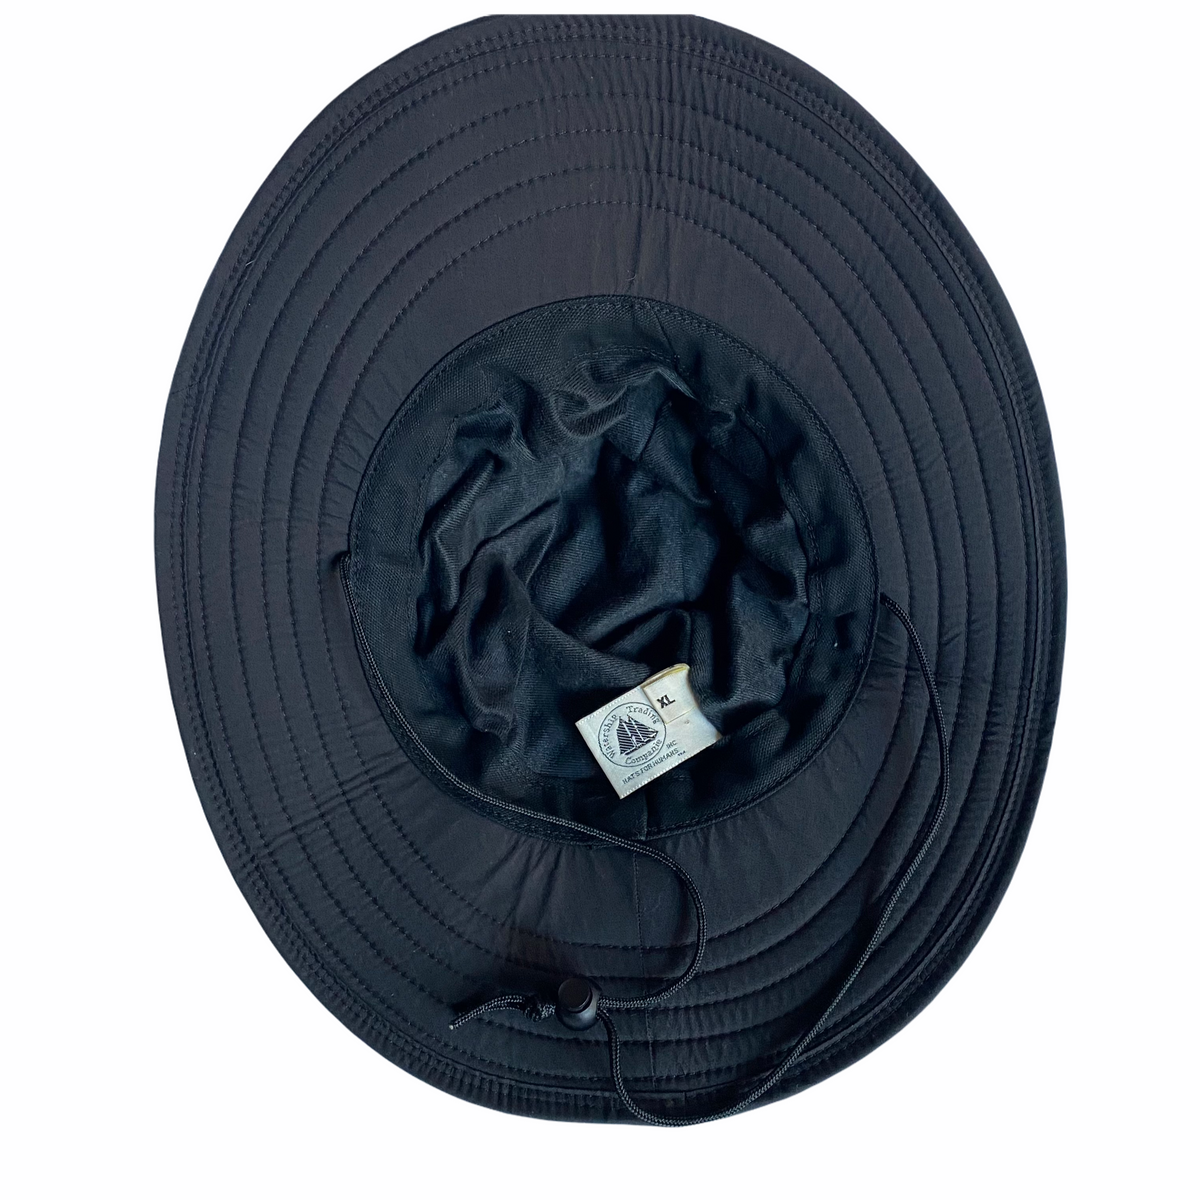 Nylon sun/rain hat -Made in usa🇺🇸 -allot of coverage XL